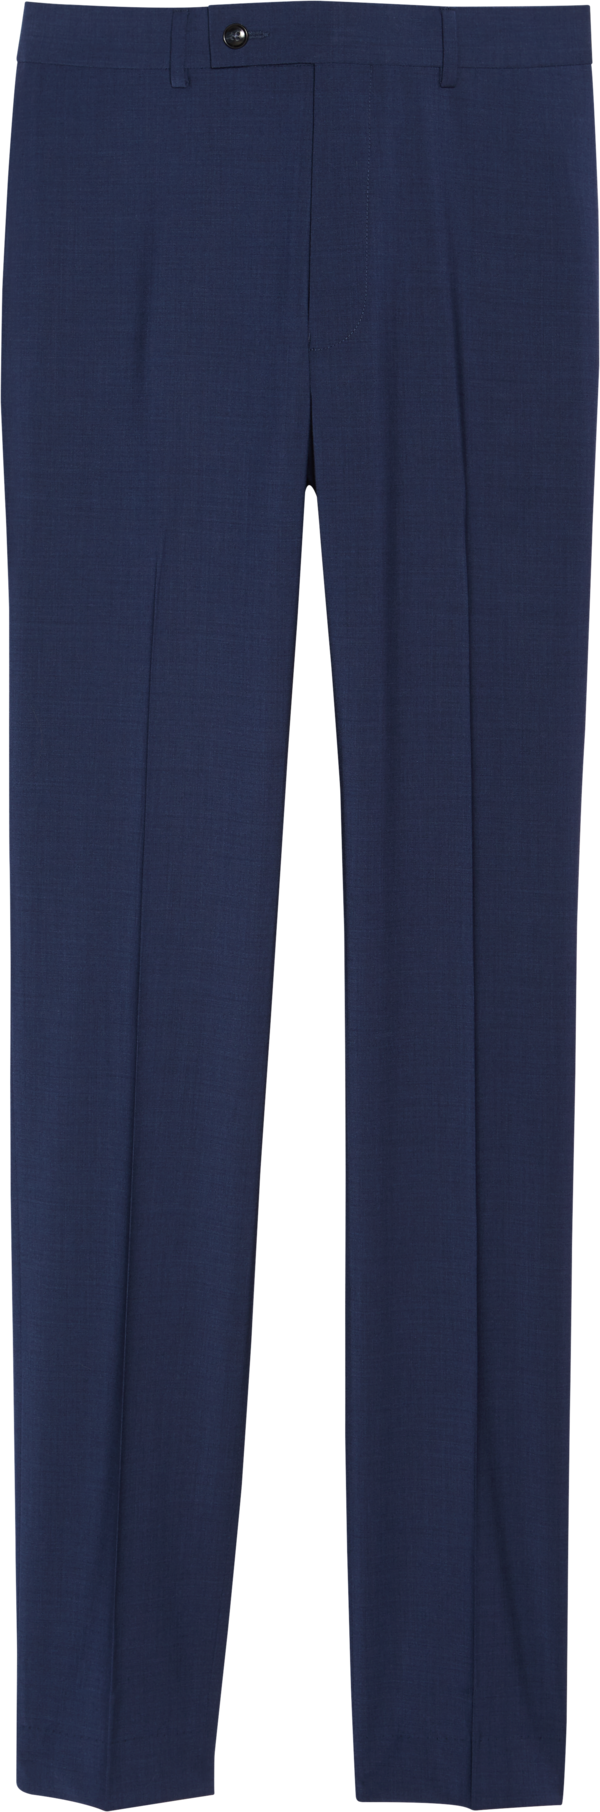 Calvin Klein Men's Suit Separates Pants Blue - Size: 34W x 30L - Blue - male